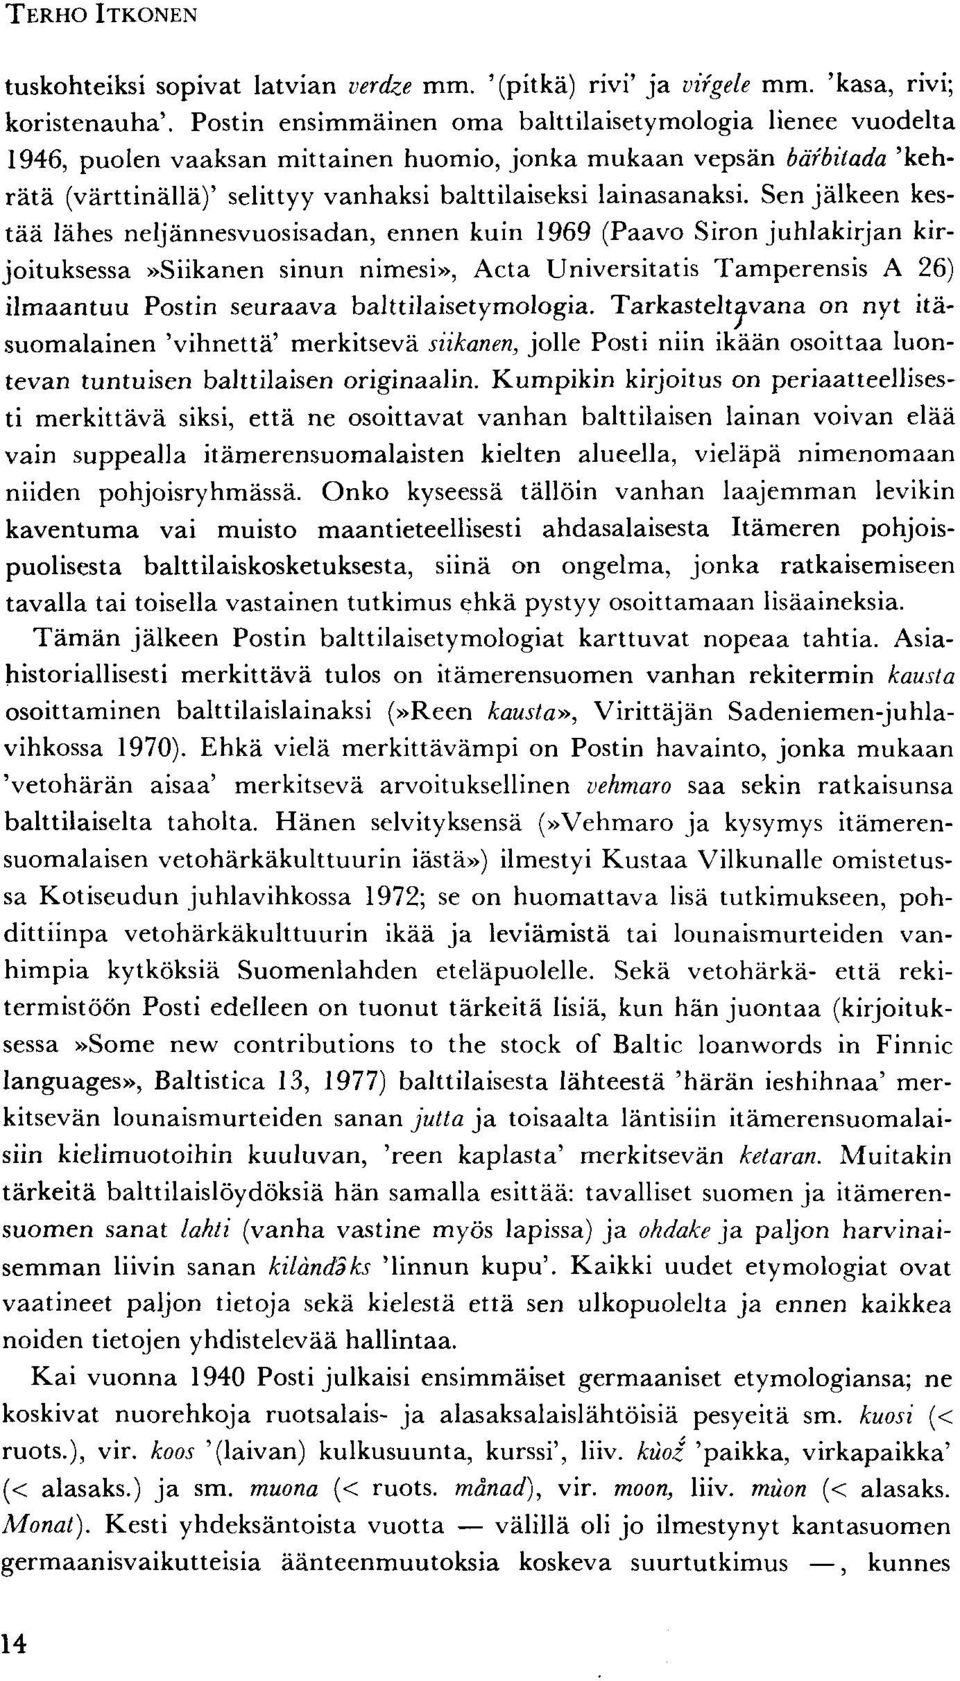 Sen jälkeen kestää lähes neljännesvuosisadan, ennen kuin 1969 (Paavo Siron juhlakirjan kirjoituksessa»siikanen sinun nimesi», Acta Universitatis Tamperensis A 26) ilmaantuu Postin seuraava